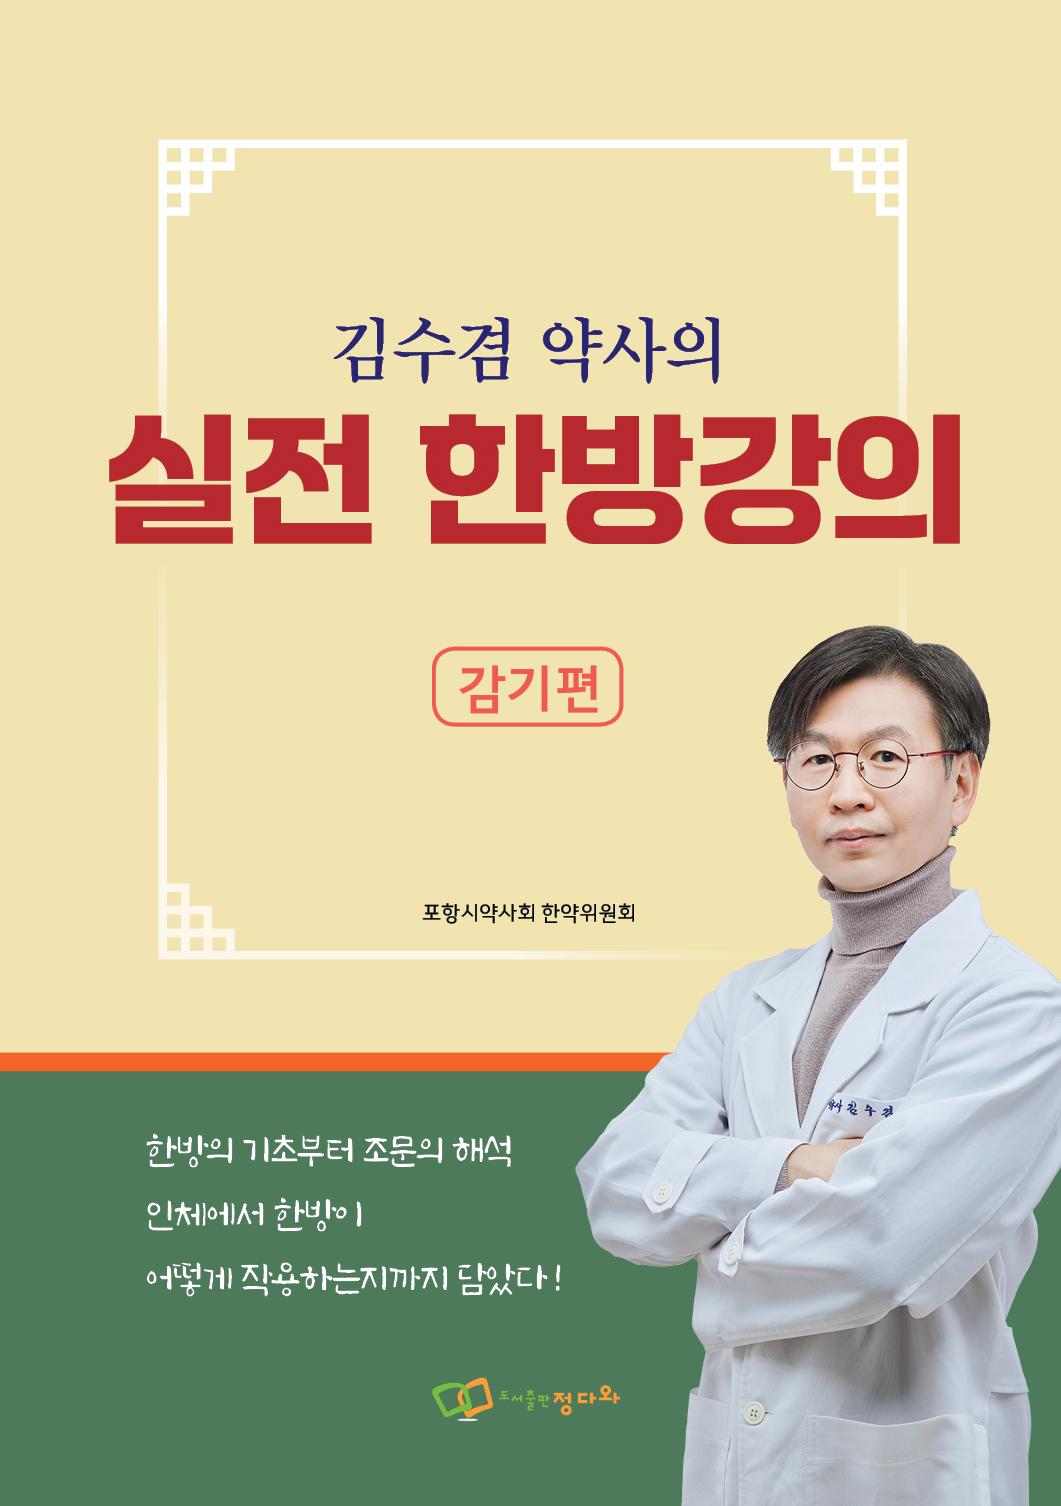 '김수겸 약사의 실전 한방강의 - 감기편' 출간